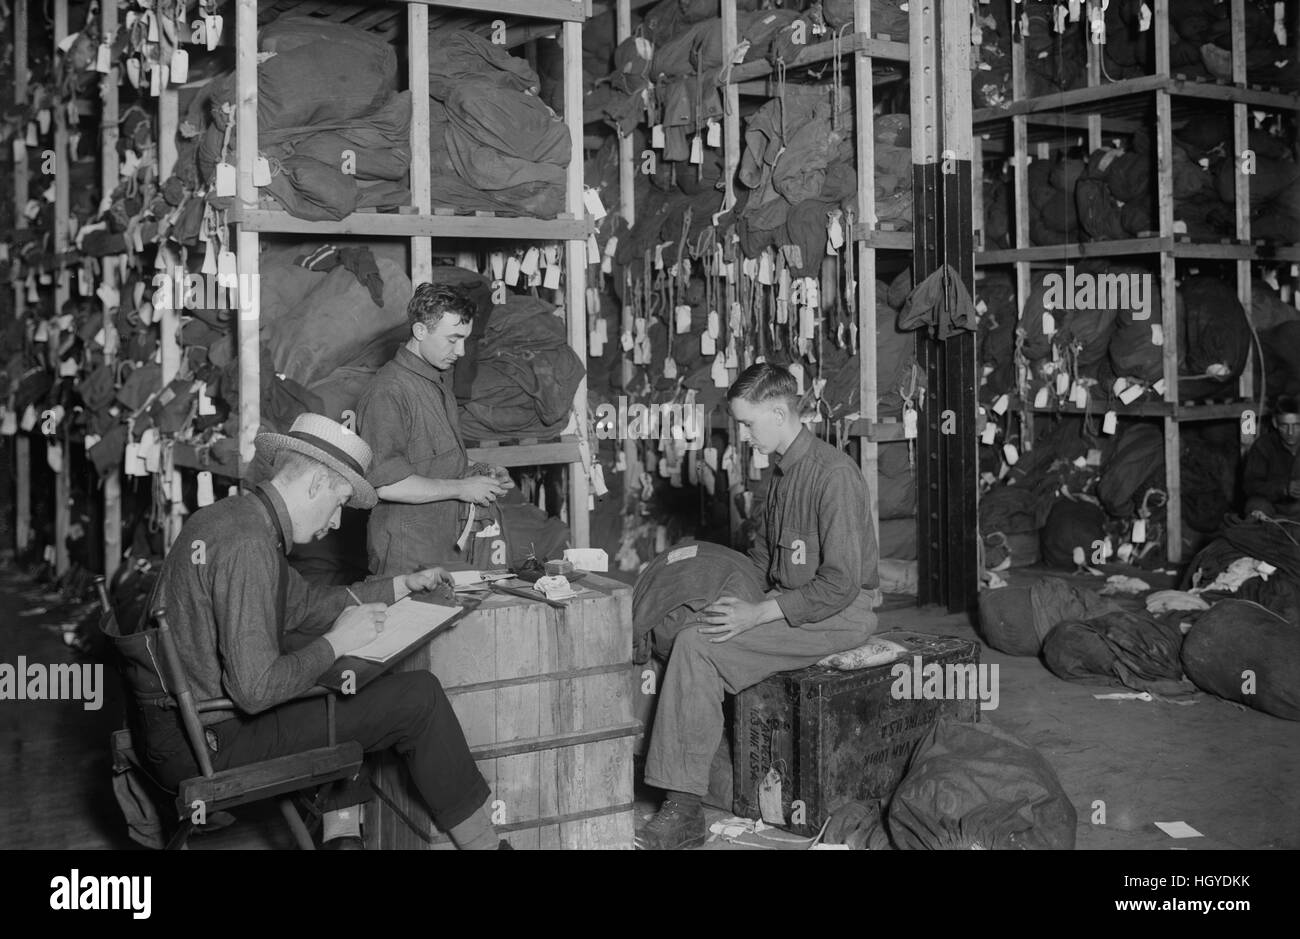 Arbeitnehmer, die Ablaufverfolgung Eigentum von Soldaten nach seiner Rückkehr aus Europa nach dem ersten Weltkrieg, New York City, New York, USA, Bain Nachrichtendienst, 1919 Stockfoto